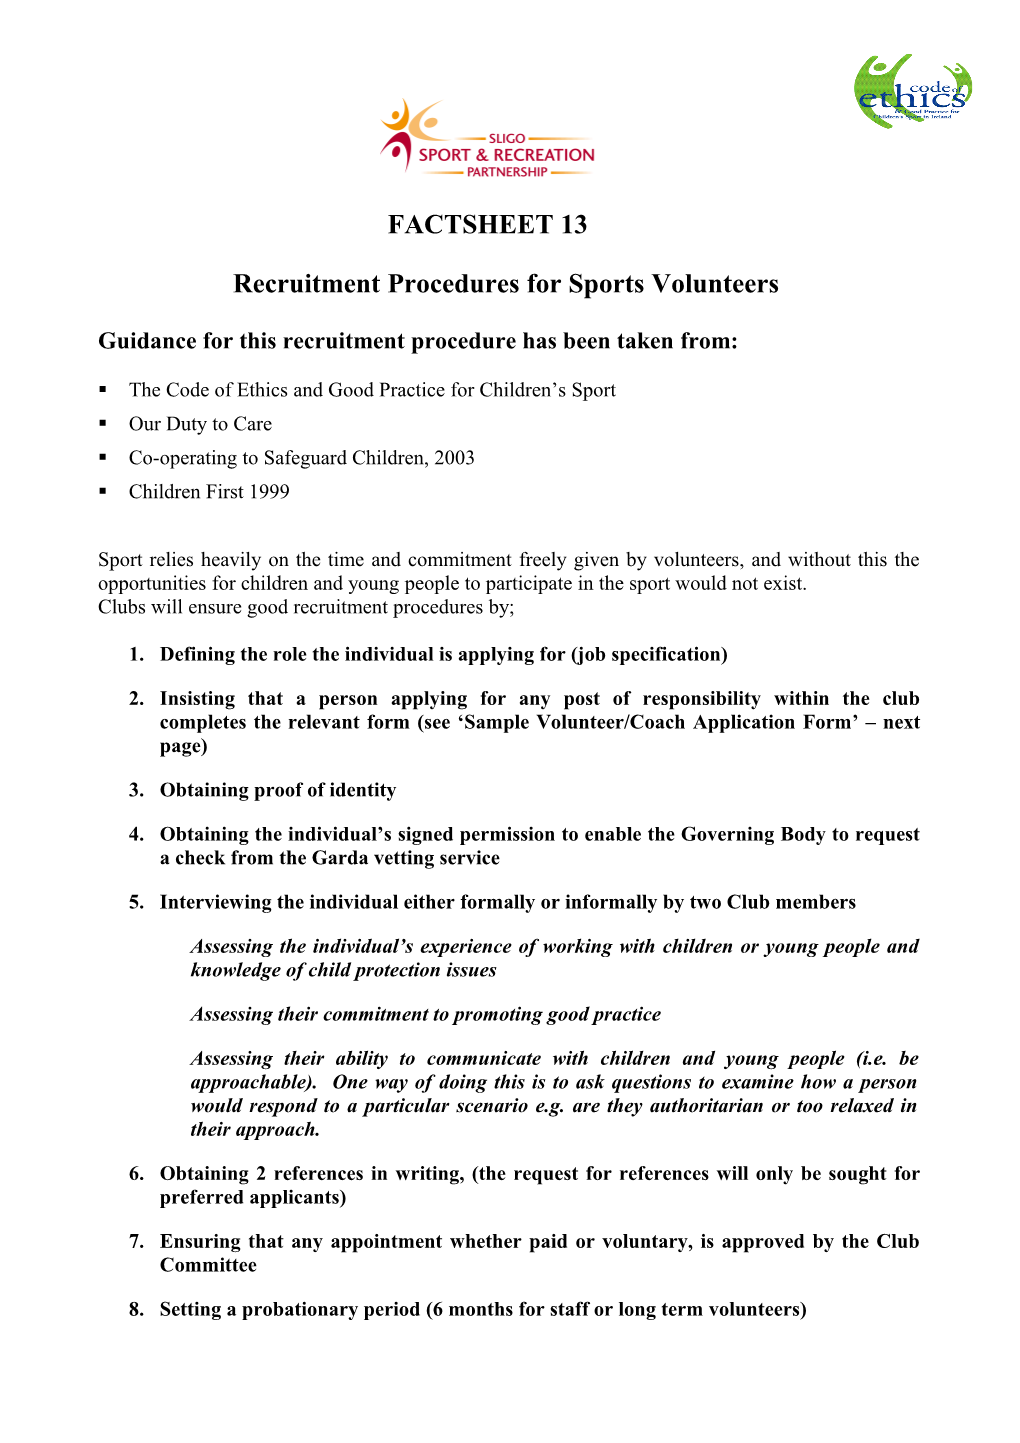 Recruitment Procedures for Sports Volunteers